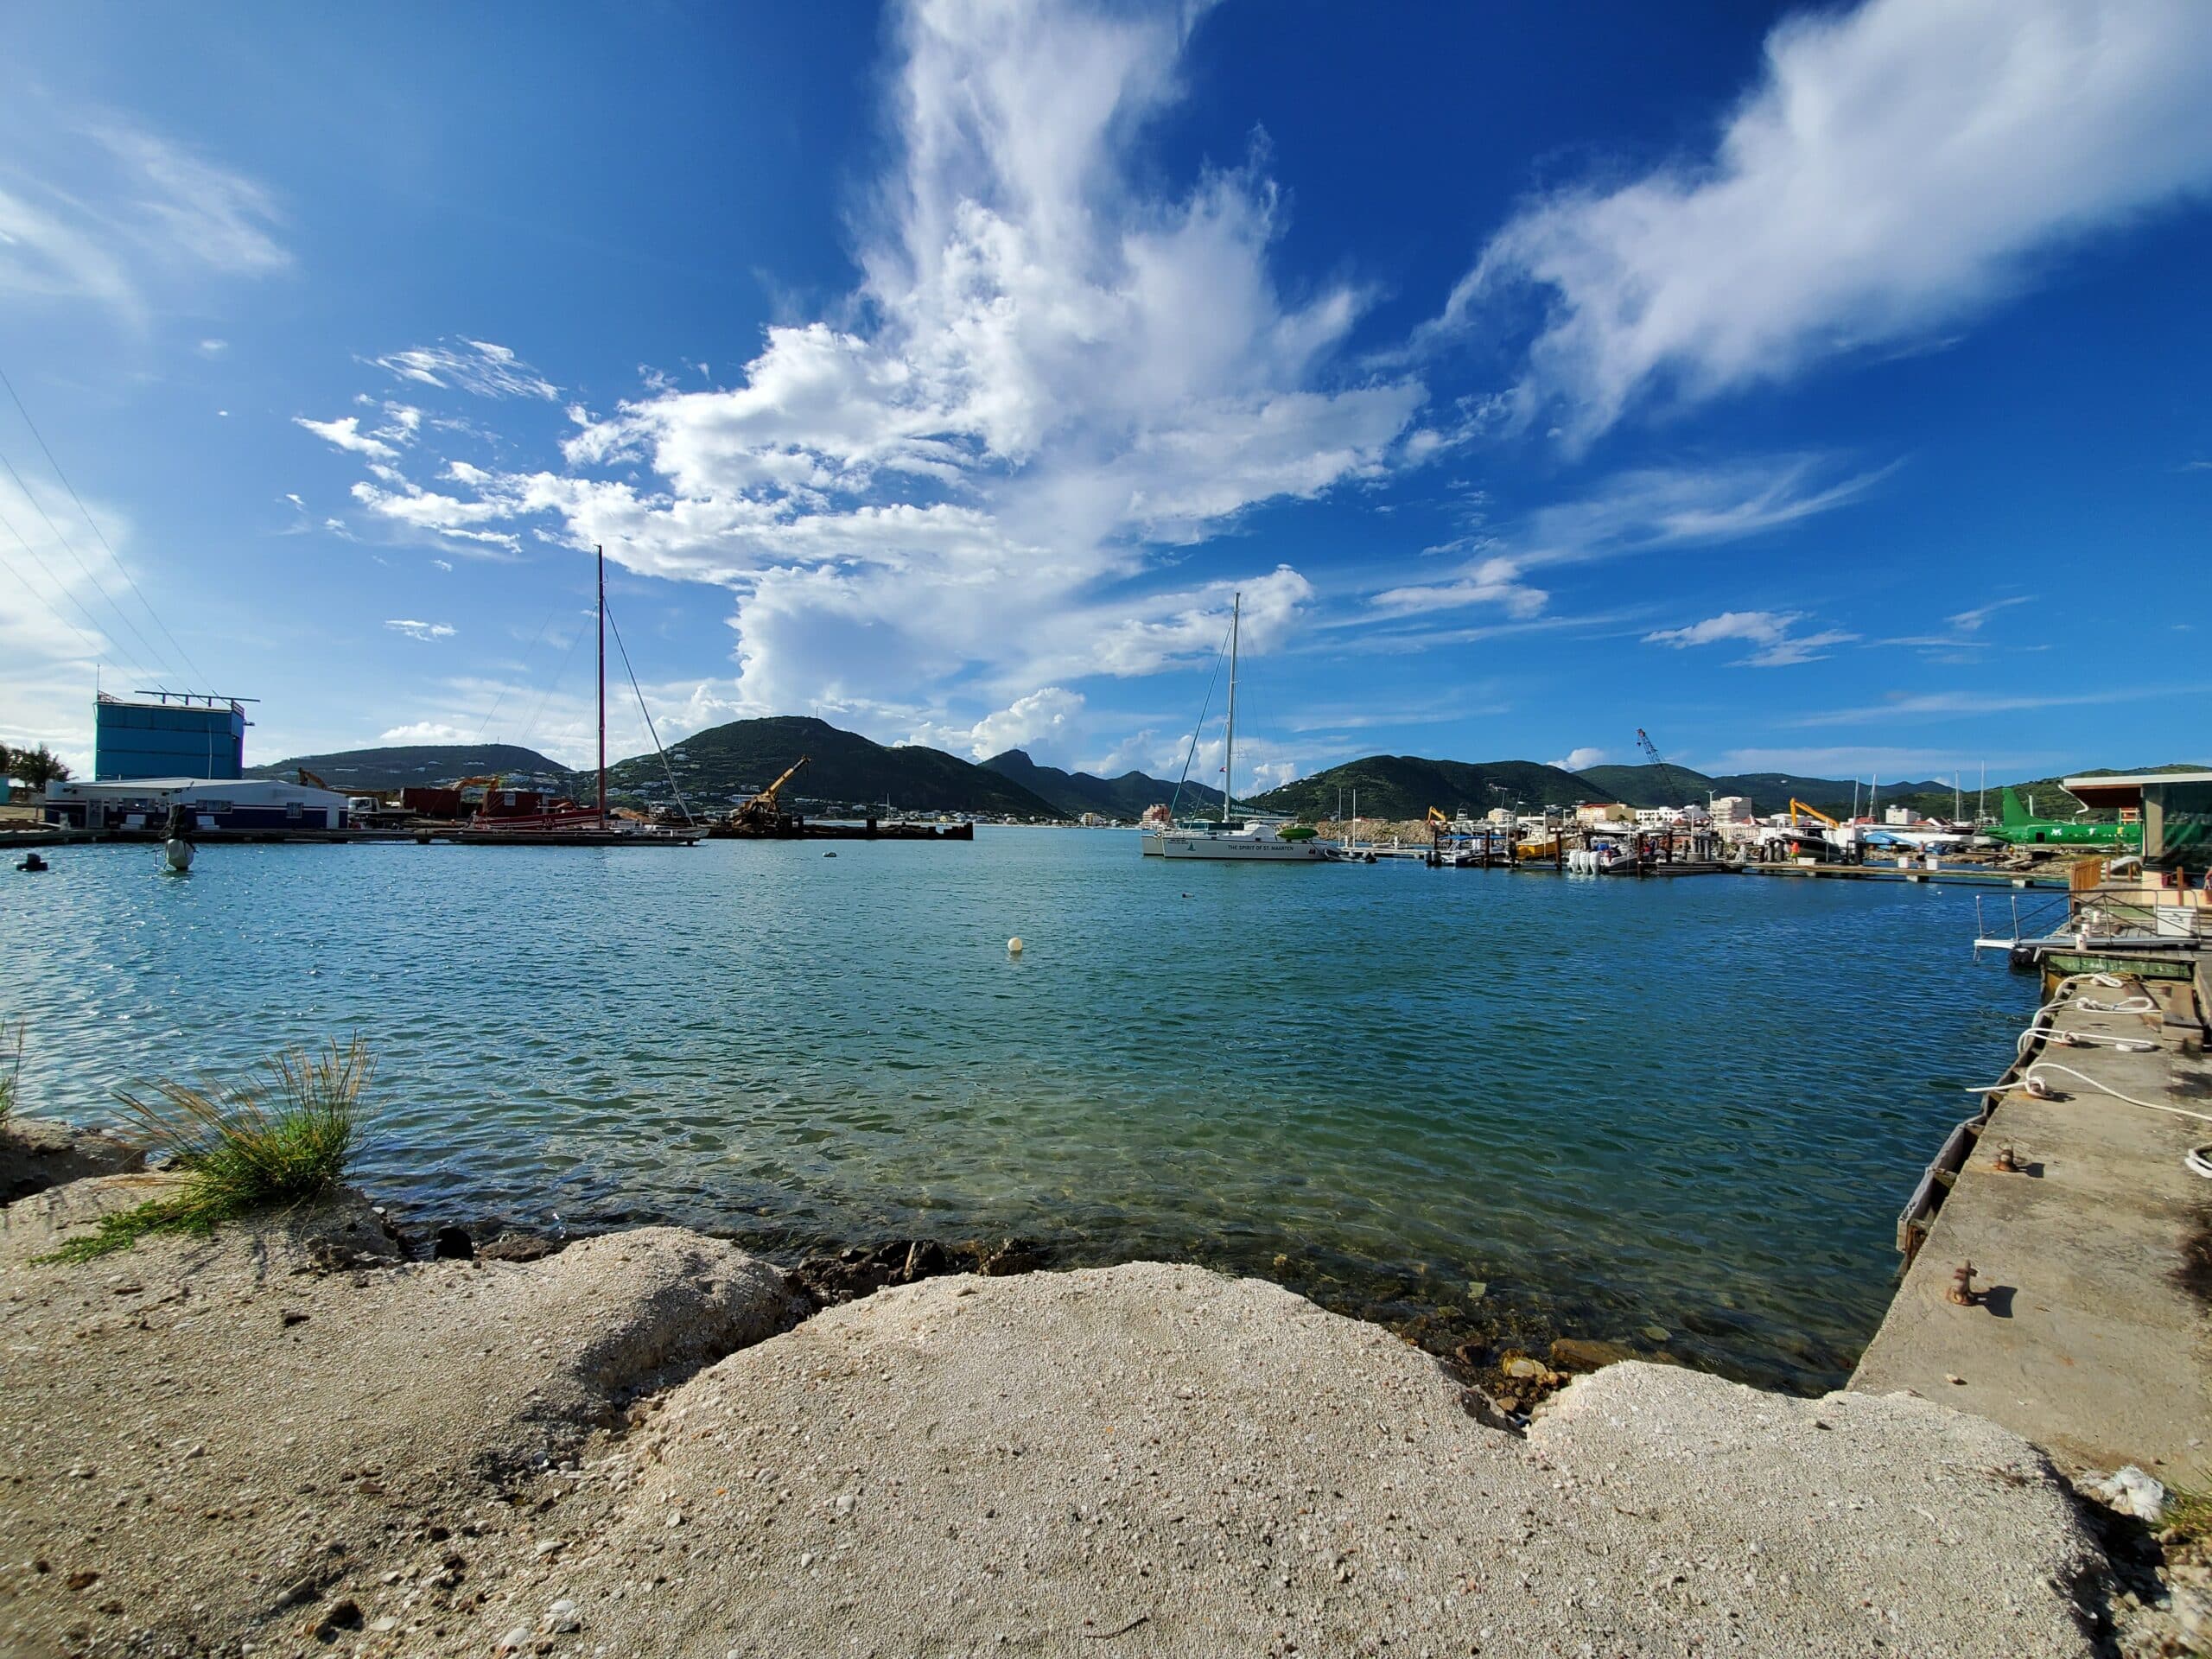 Vista de St Maarten durante o dia com mar e barcos.